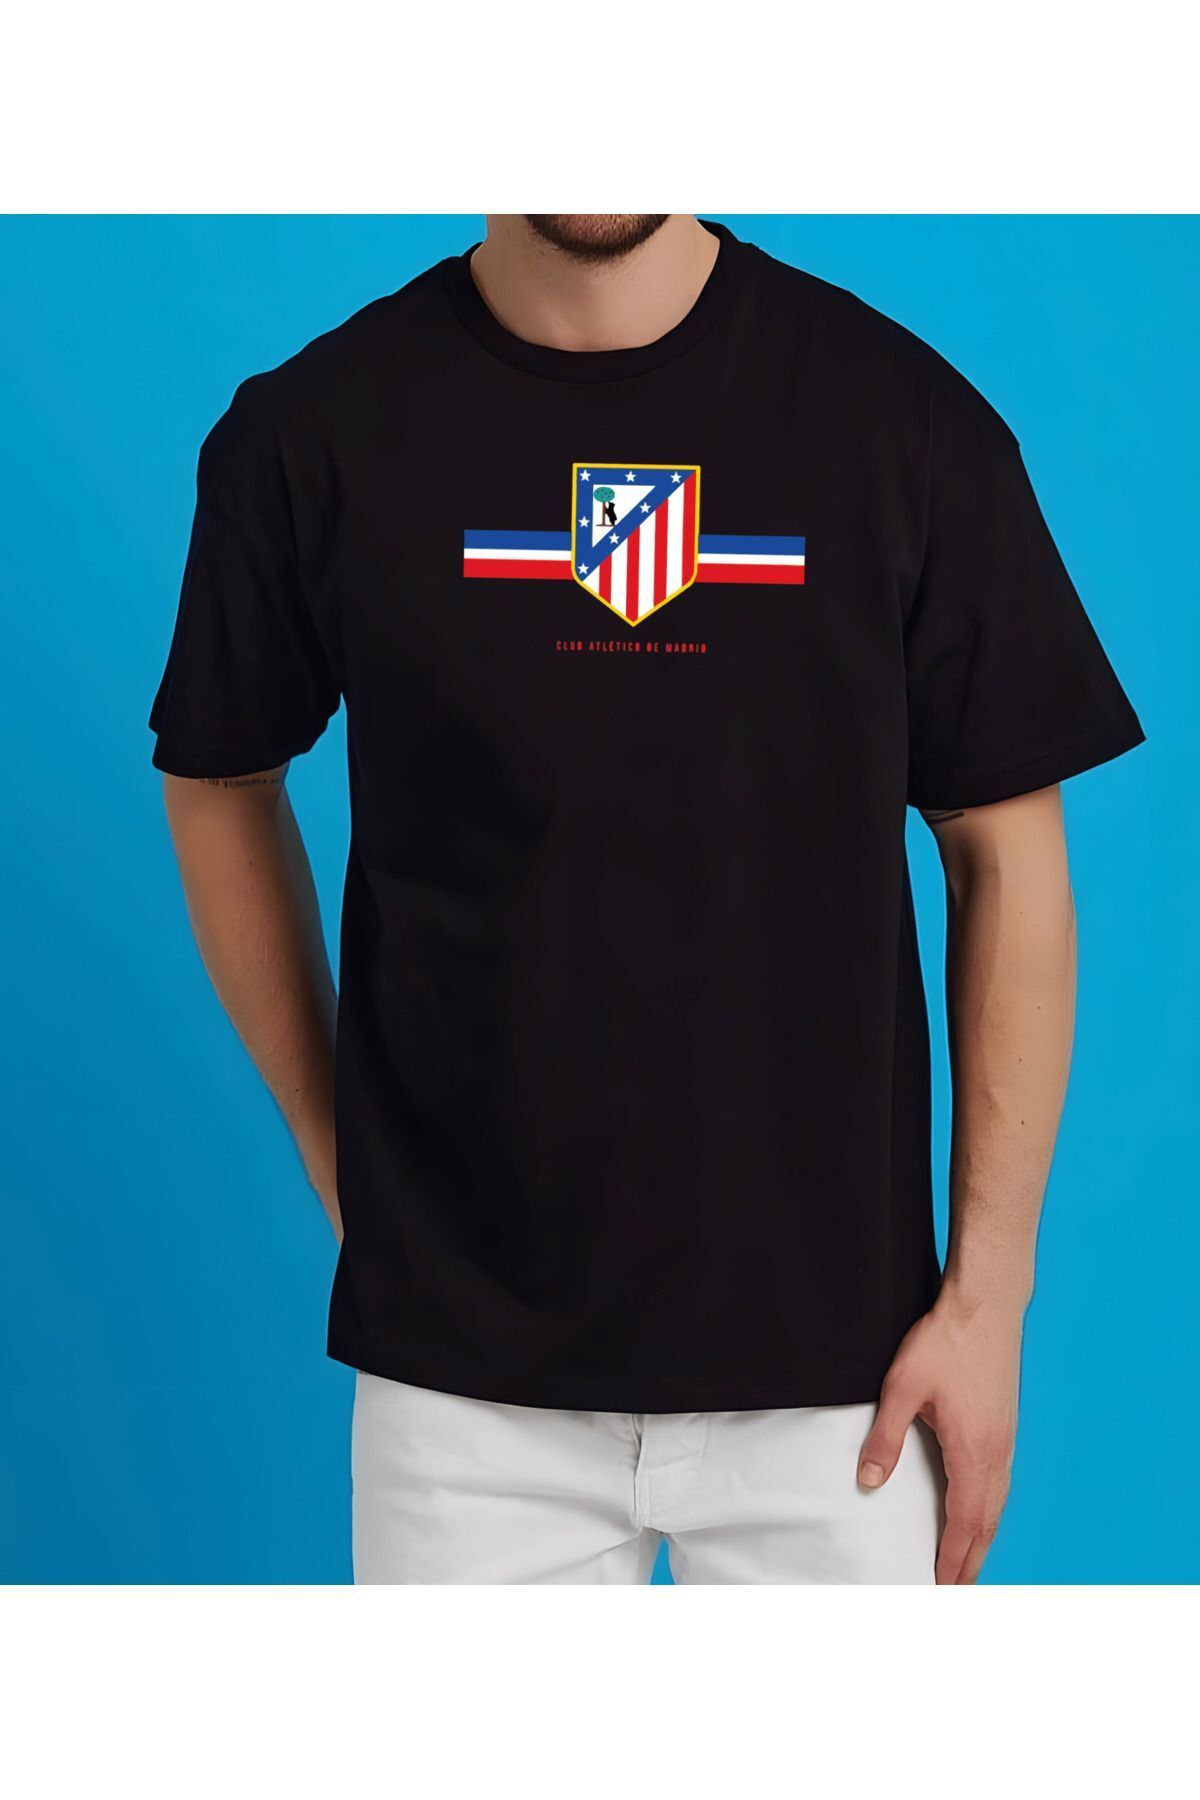 ZAFOİN Atletıco Madrid Futbol Takımı Tshirt Baskılı T-Shirt Erkek Kadın Unisex Tişört Oversize Tşört